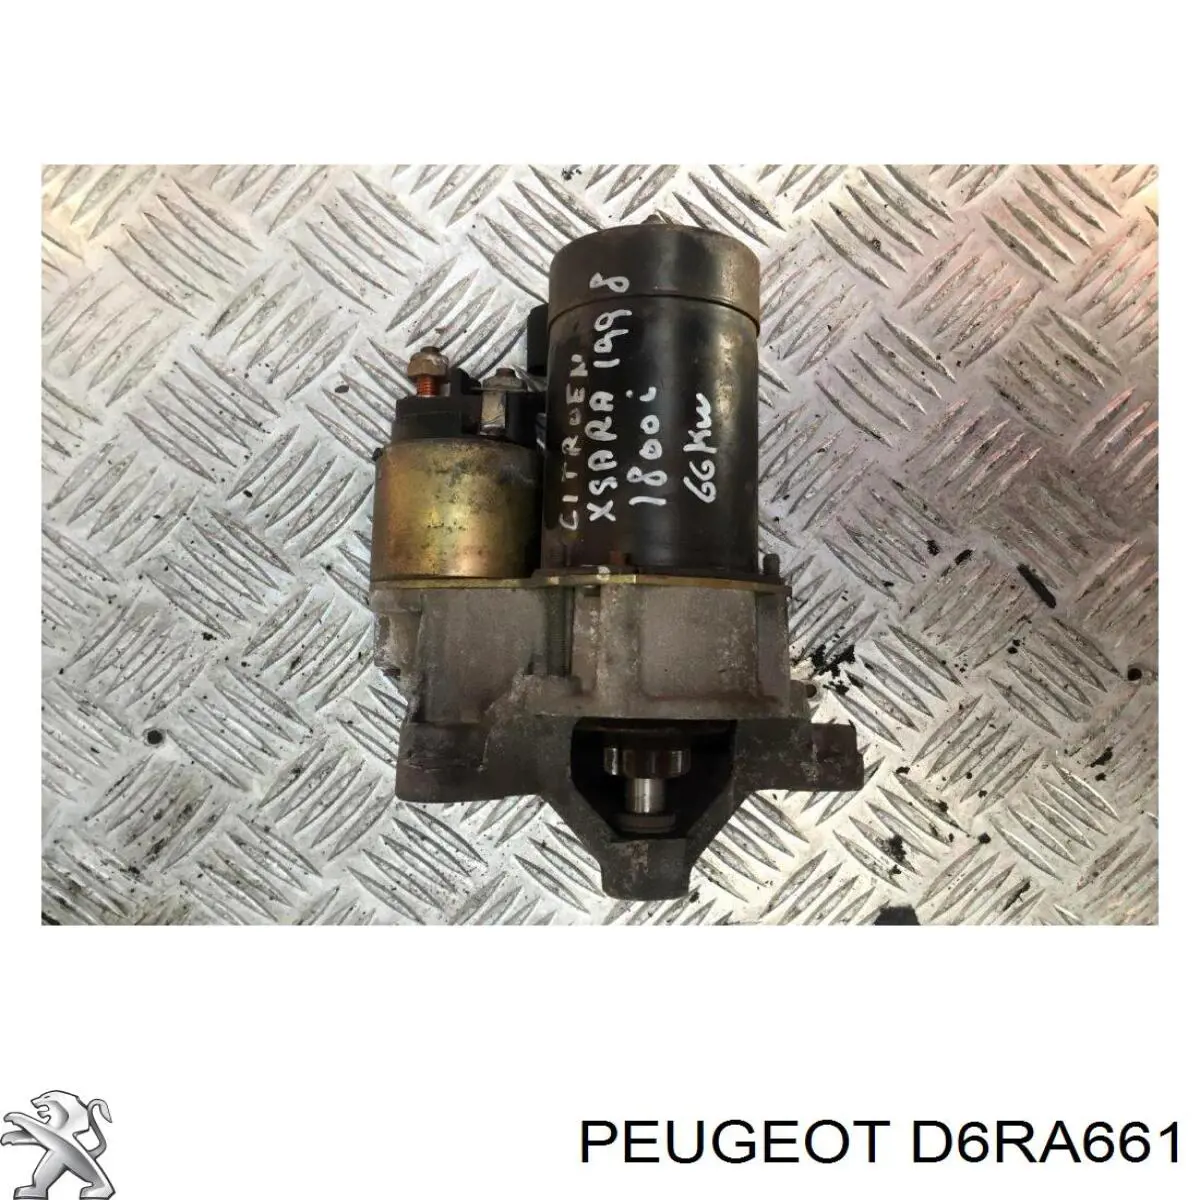 D6RA661 Peugeot/Citroen motor de arranque